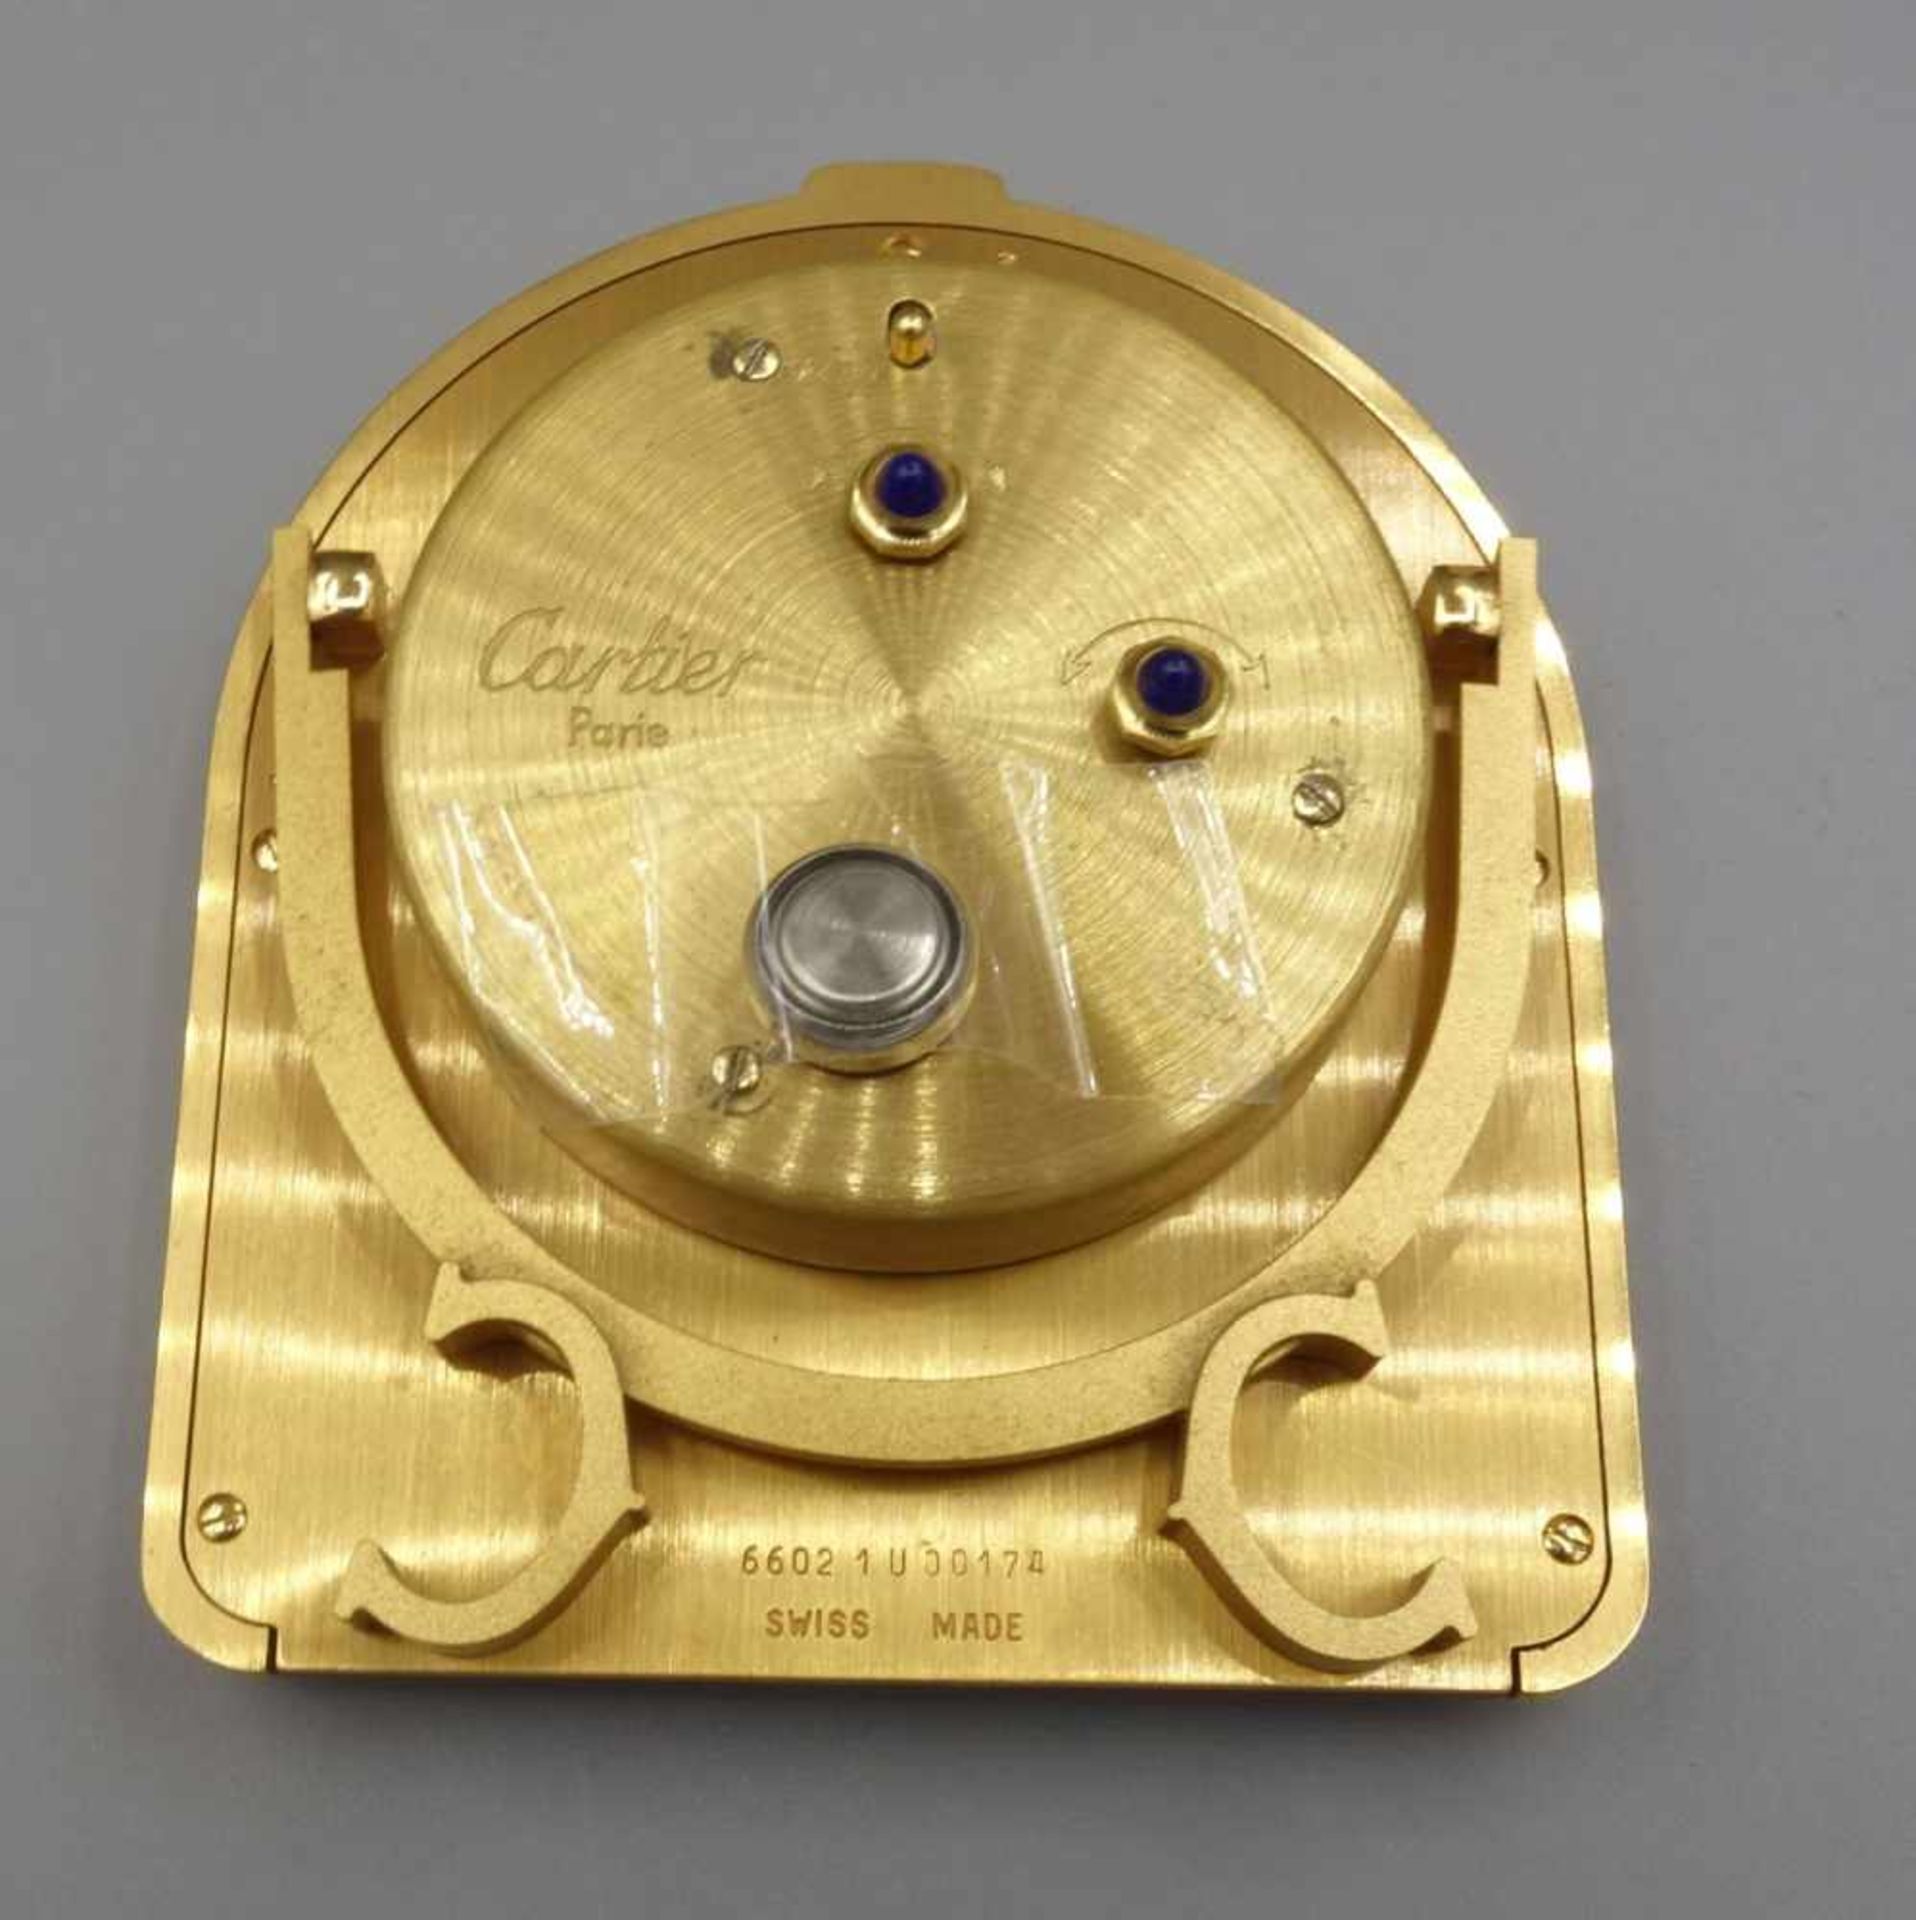 CARTIER-WECKER "ROMANE" / cartier alarm clock, Quartz-Uhr. Manufaktur "must de Cartier"/ Paris. - Image 3 of 6